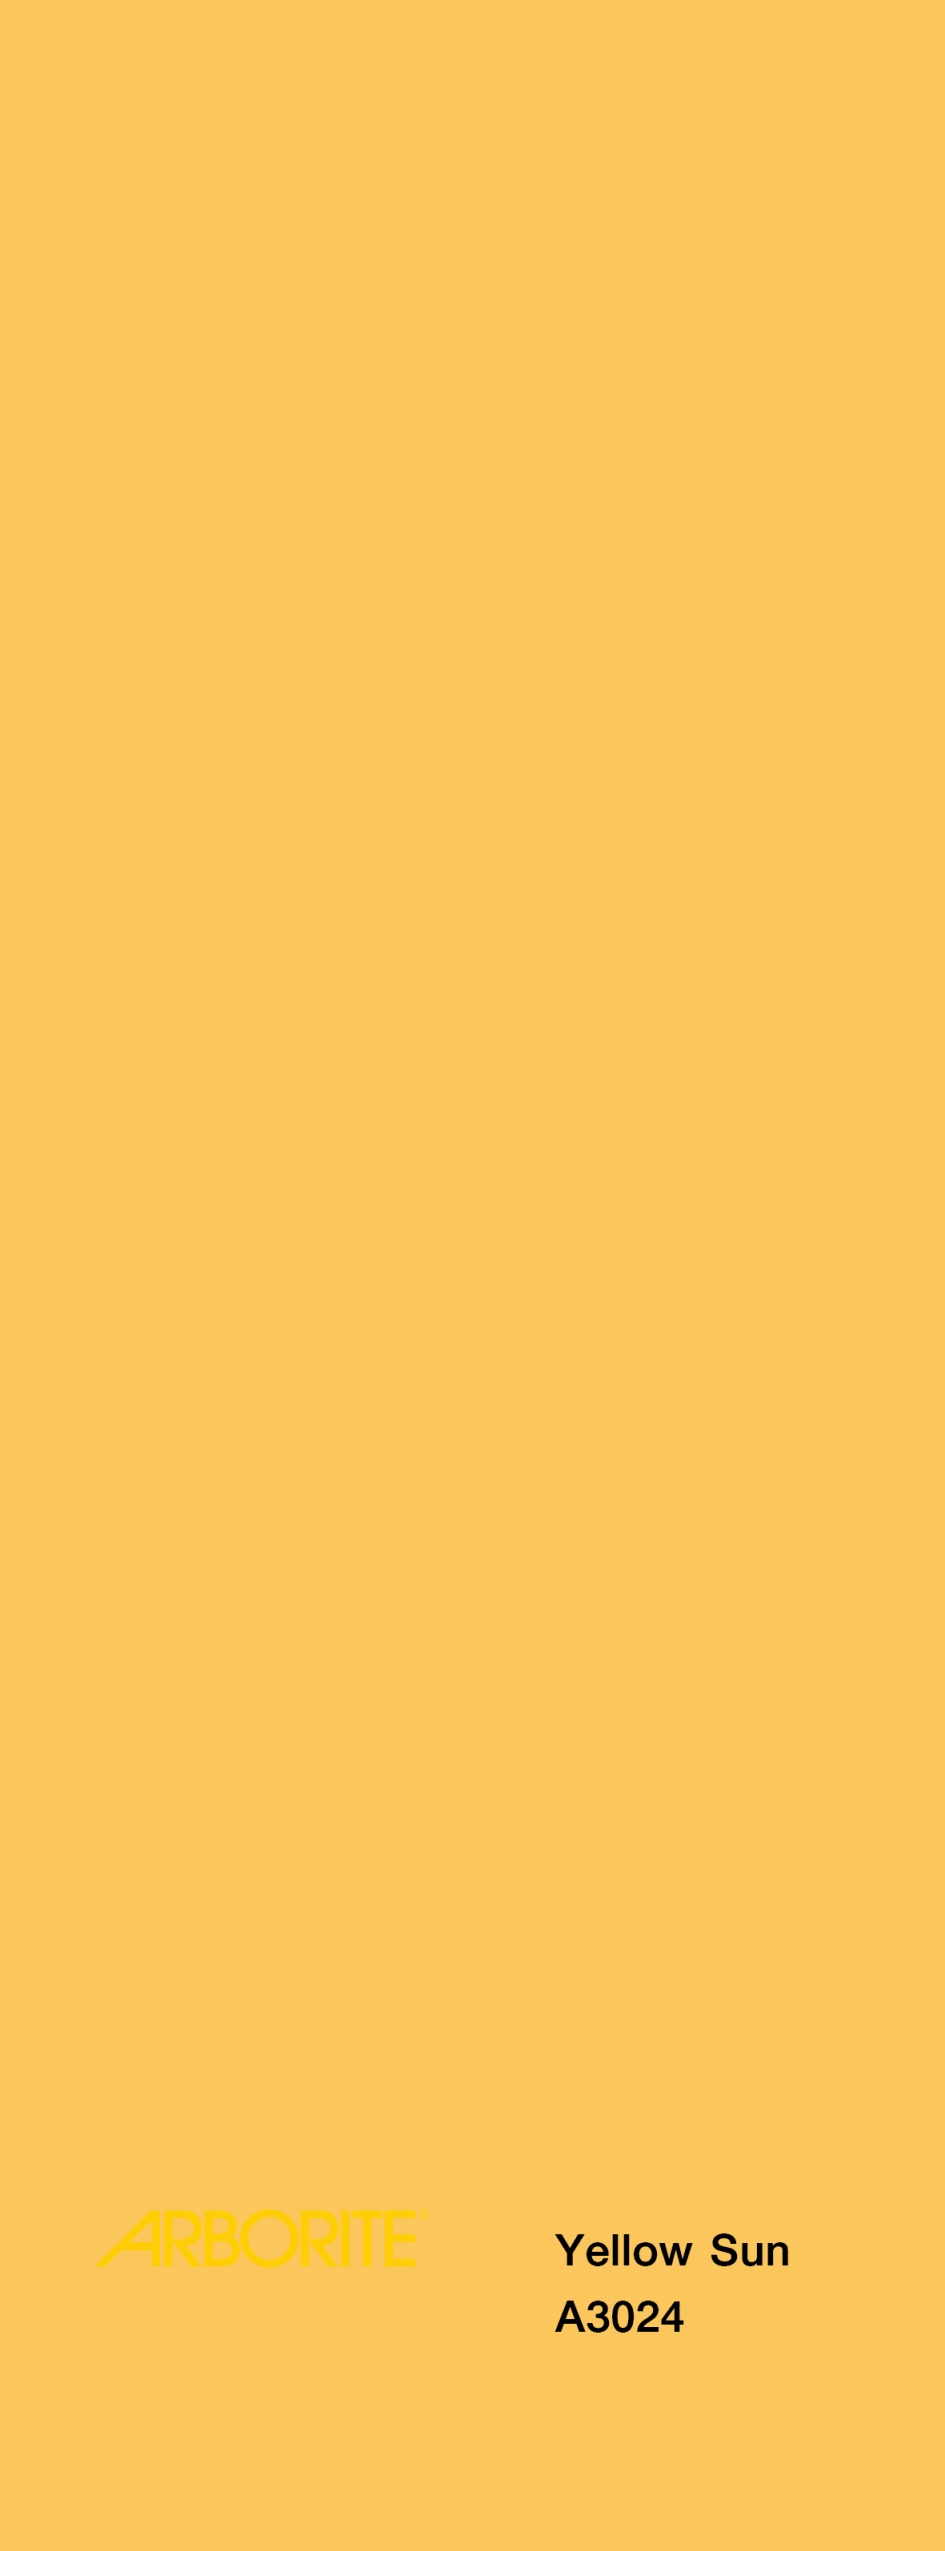 A3024 – Yellow Sun